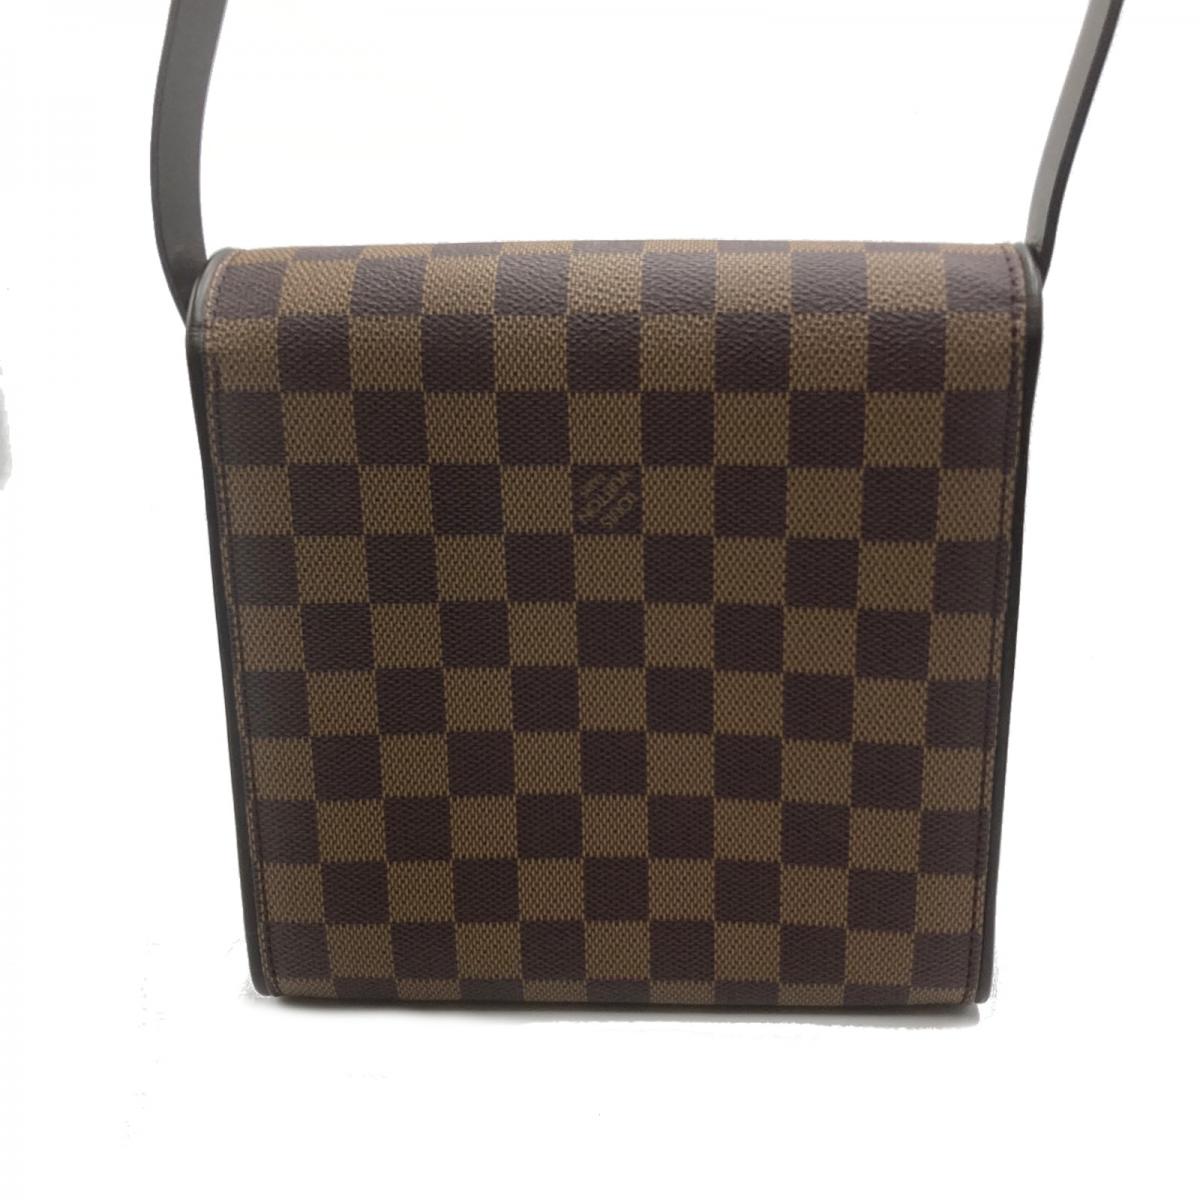  Louis Vuitton N51162 Tribeca Mini Damier Shoulder